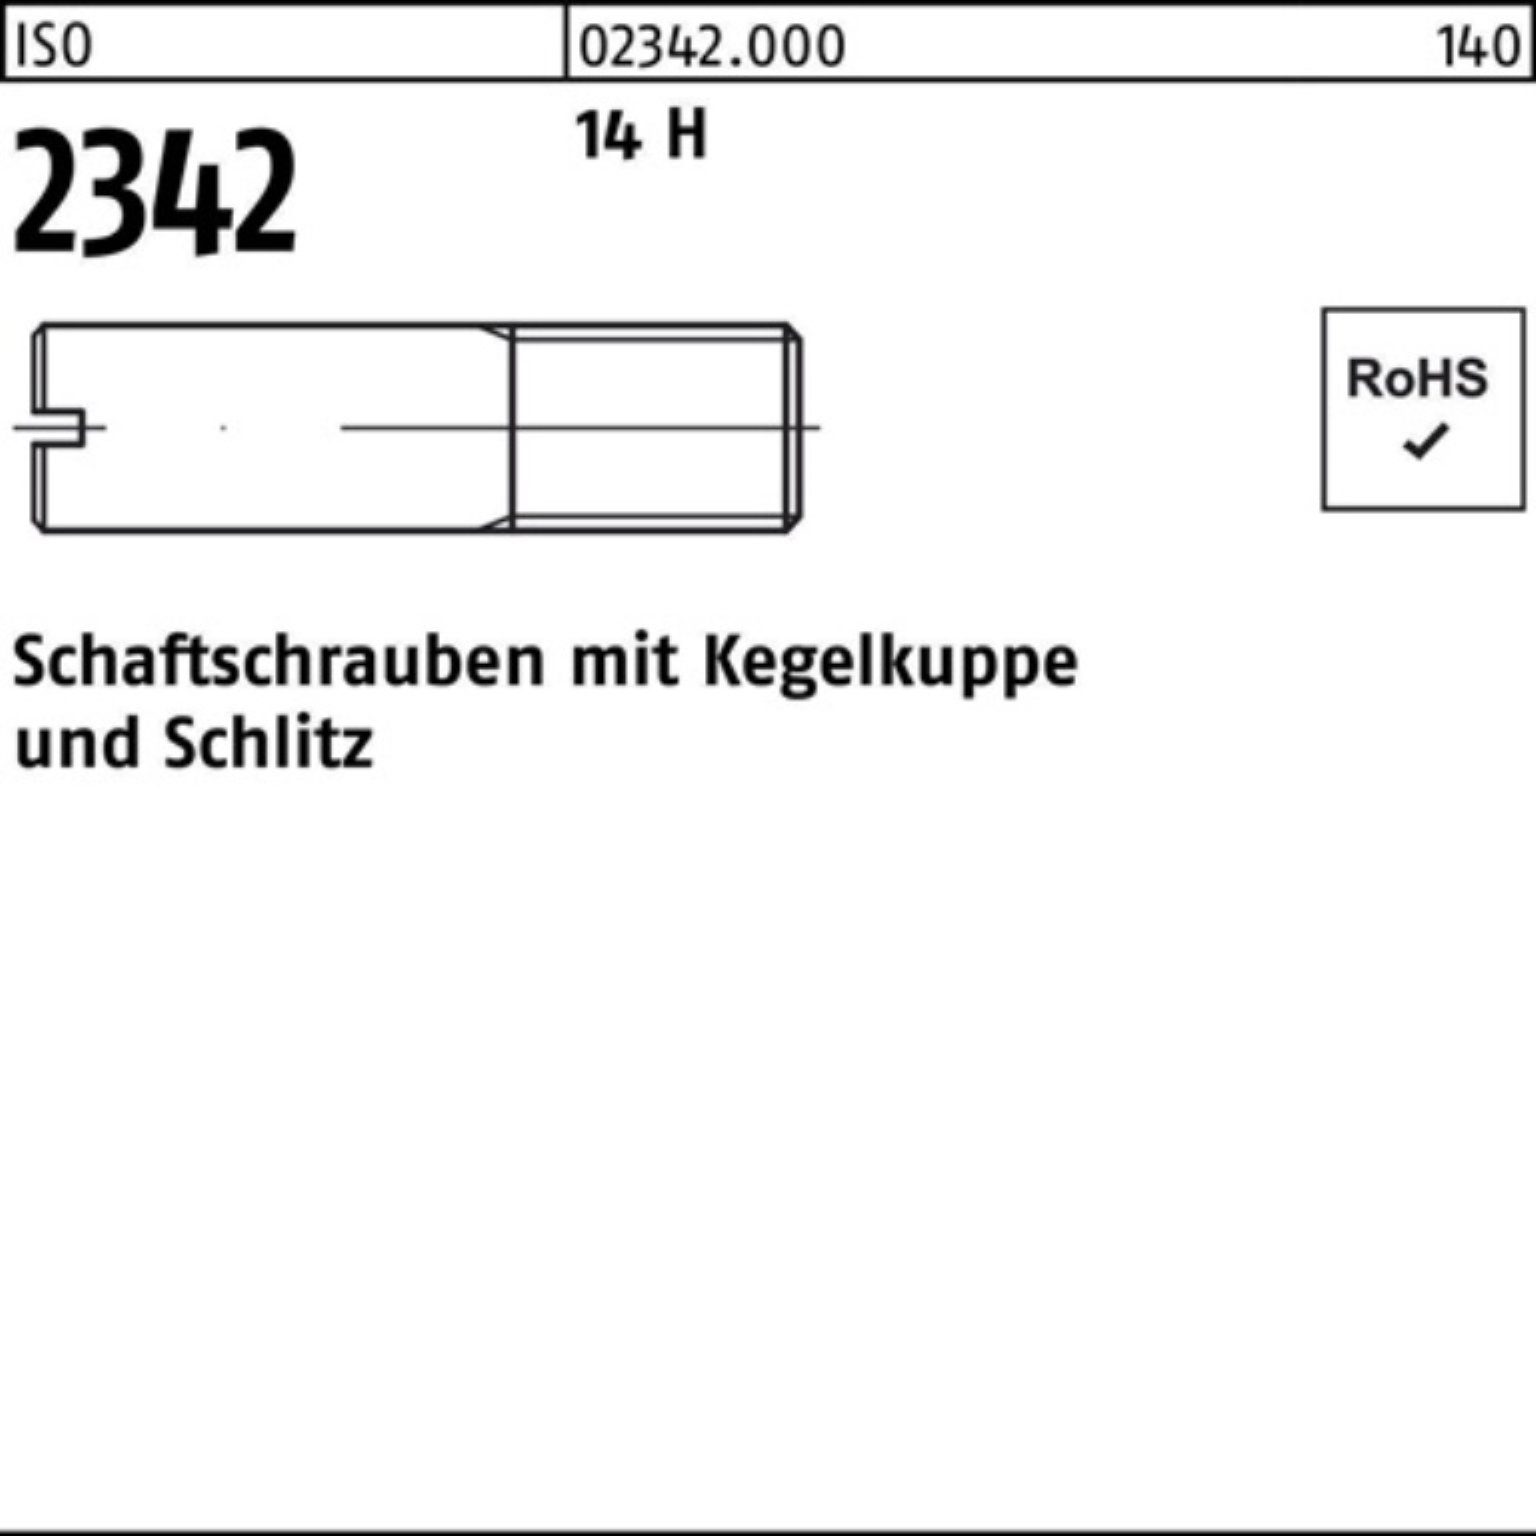 Reyher Schraube 100er Pack Schaftschraube ISO 2342 Kegelkuppe/Schlitz M5x 40 14 H 100